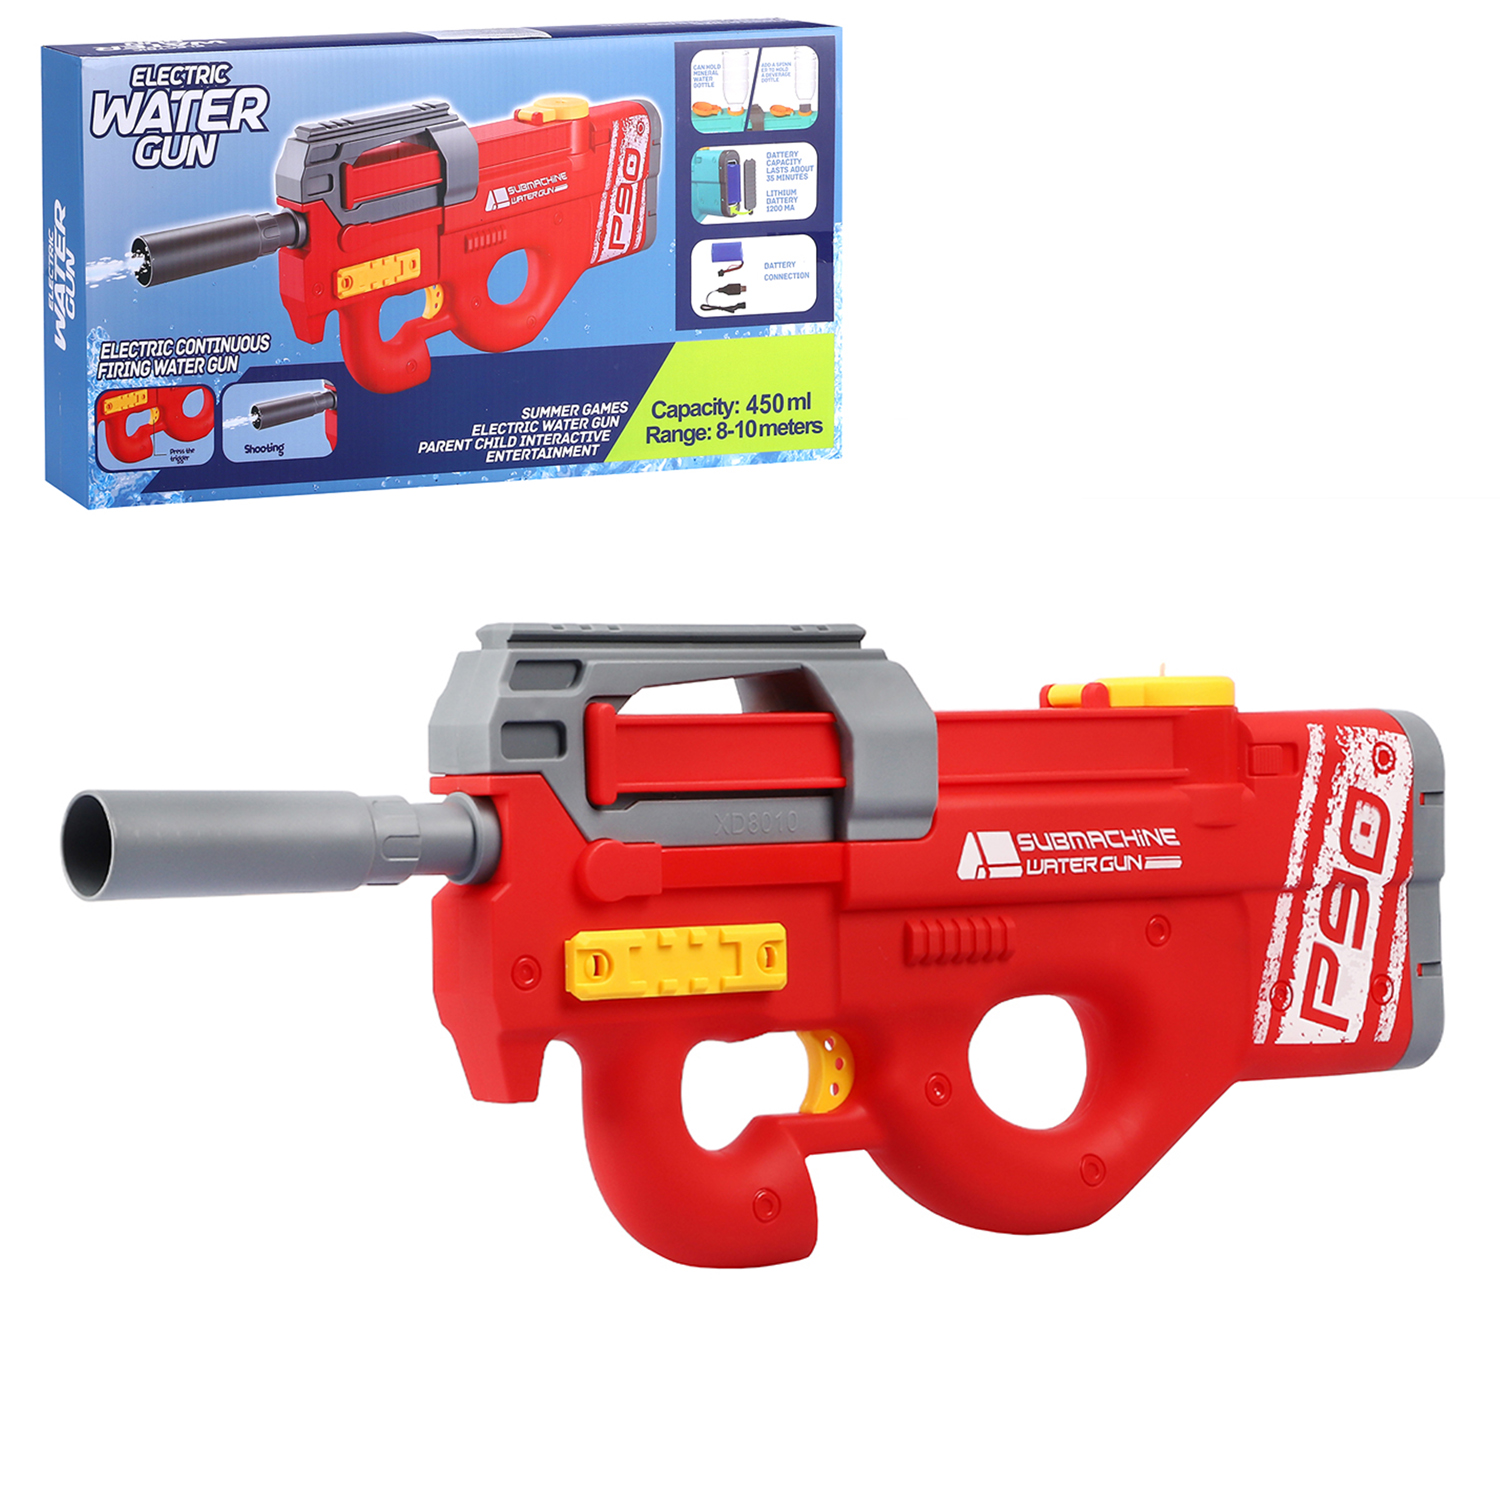 Водный пистолет игрушечный, электропистолет, на аккумуляторе, красный, JB0211236 водяное оружие на аккумуляторе пистолет игрушечный с функцией спрея водный бой jb0211497